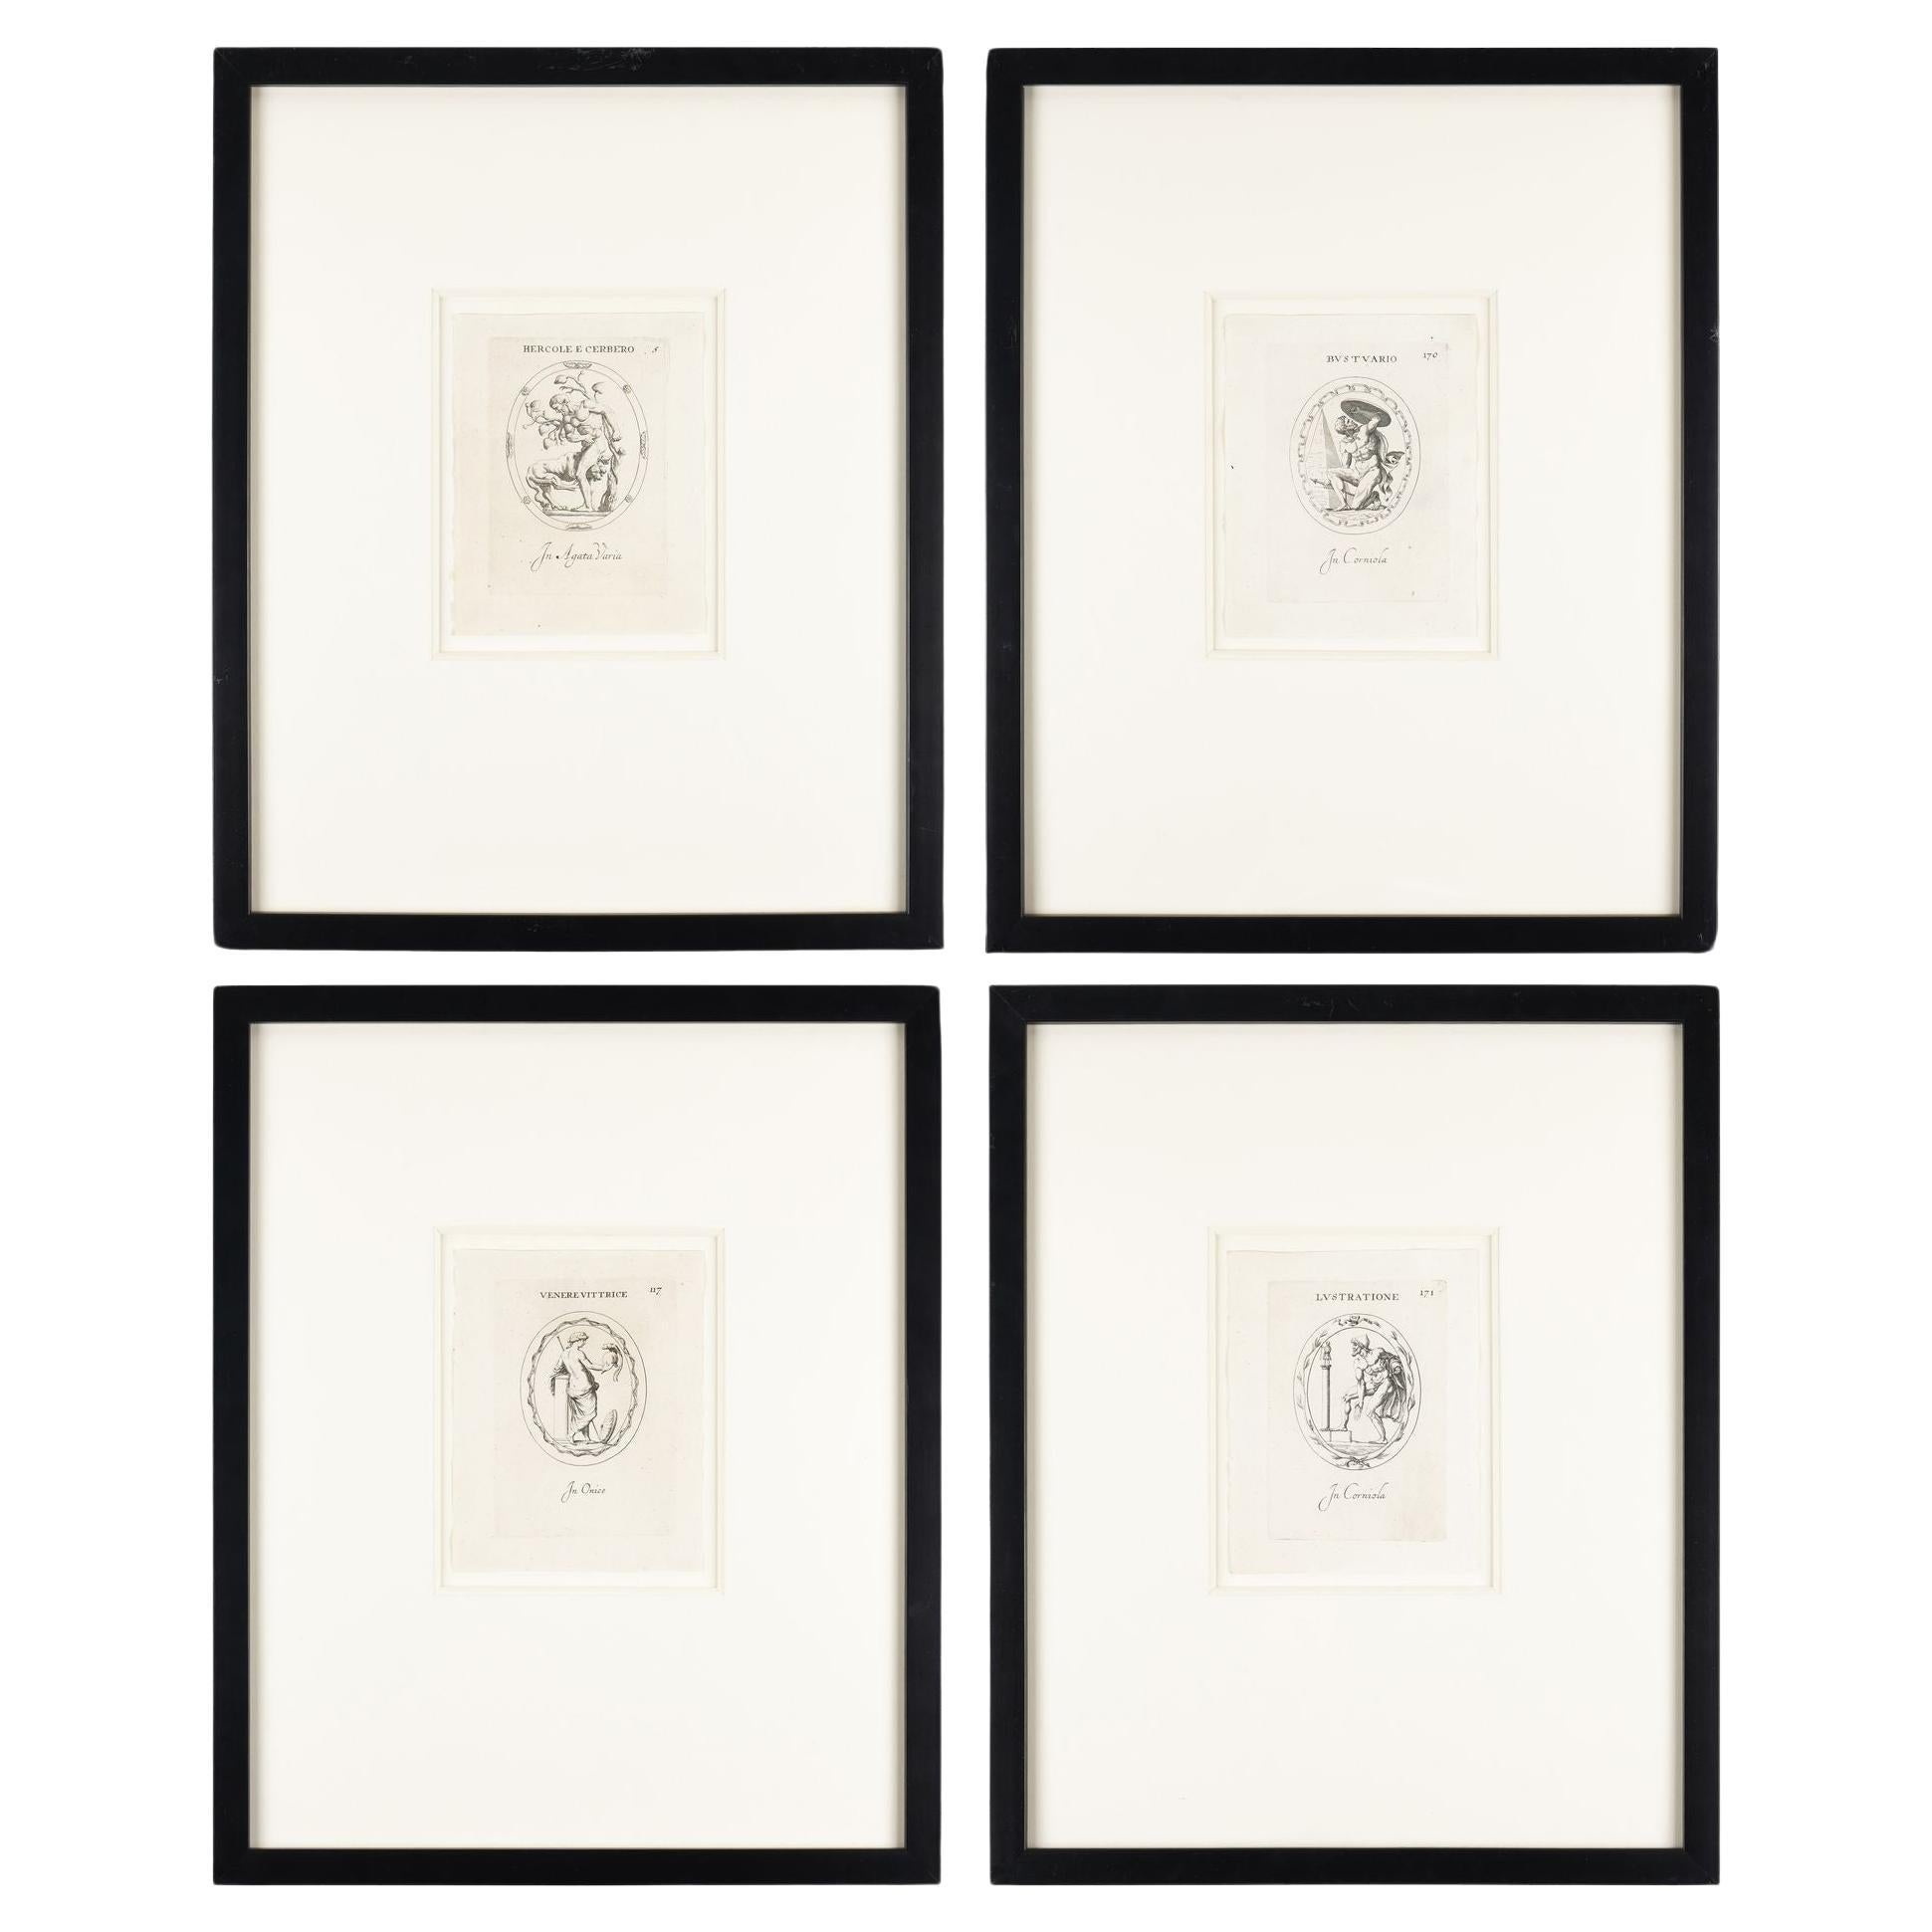 Set of four Roman intaglio engravings by Leonardo Agostini, 1685-1793